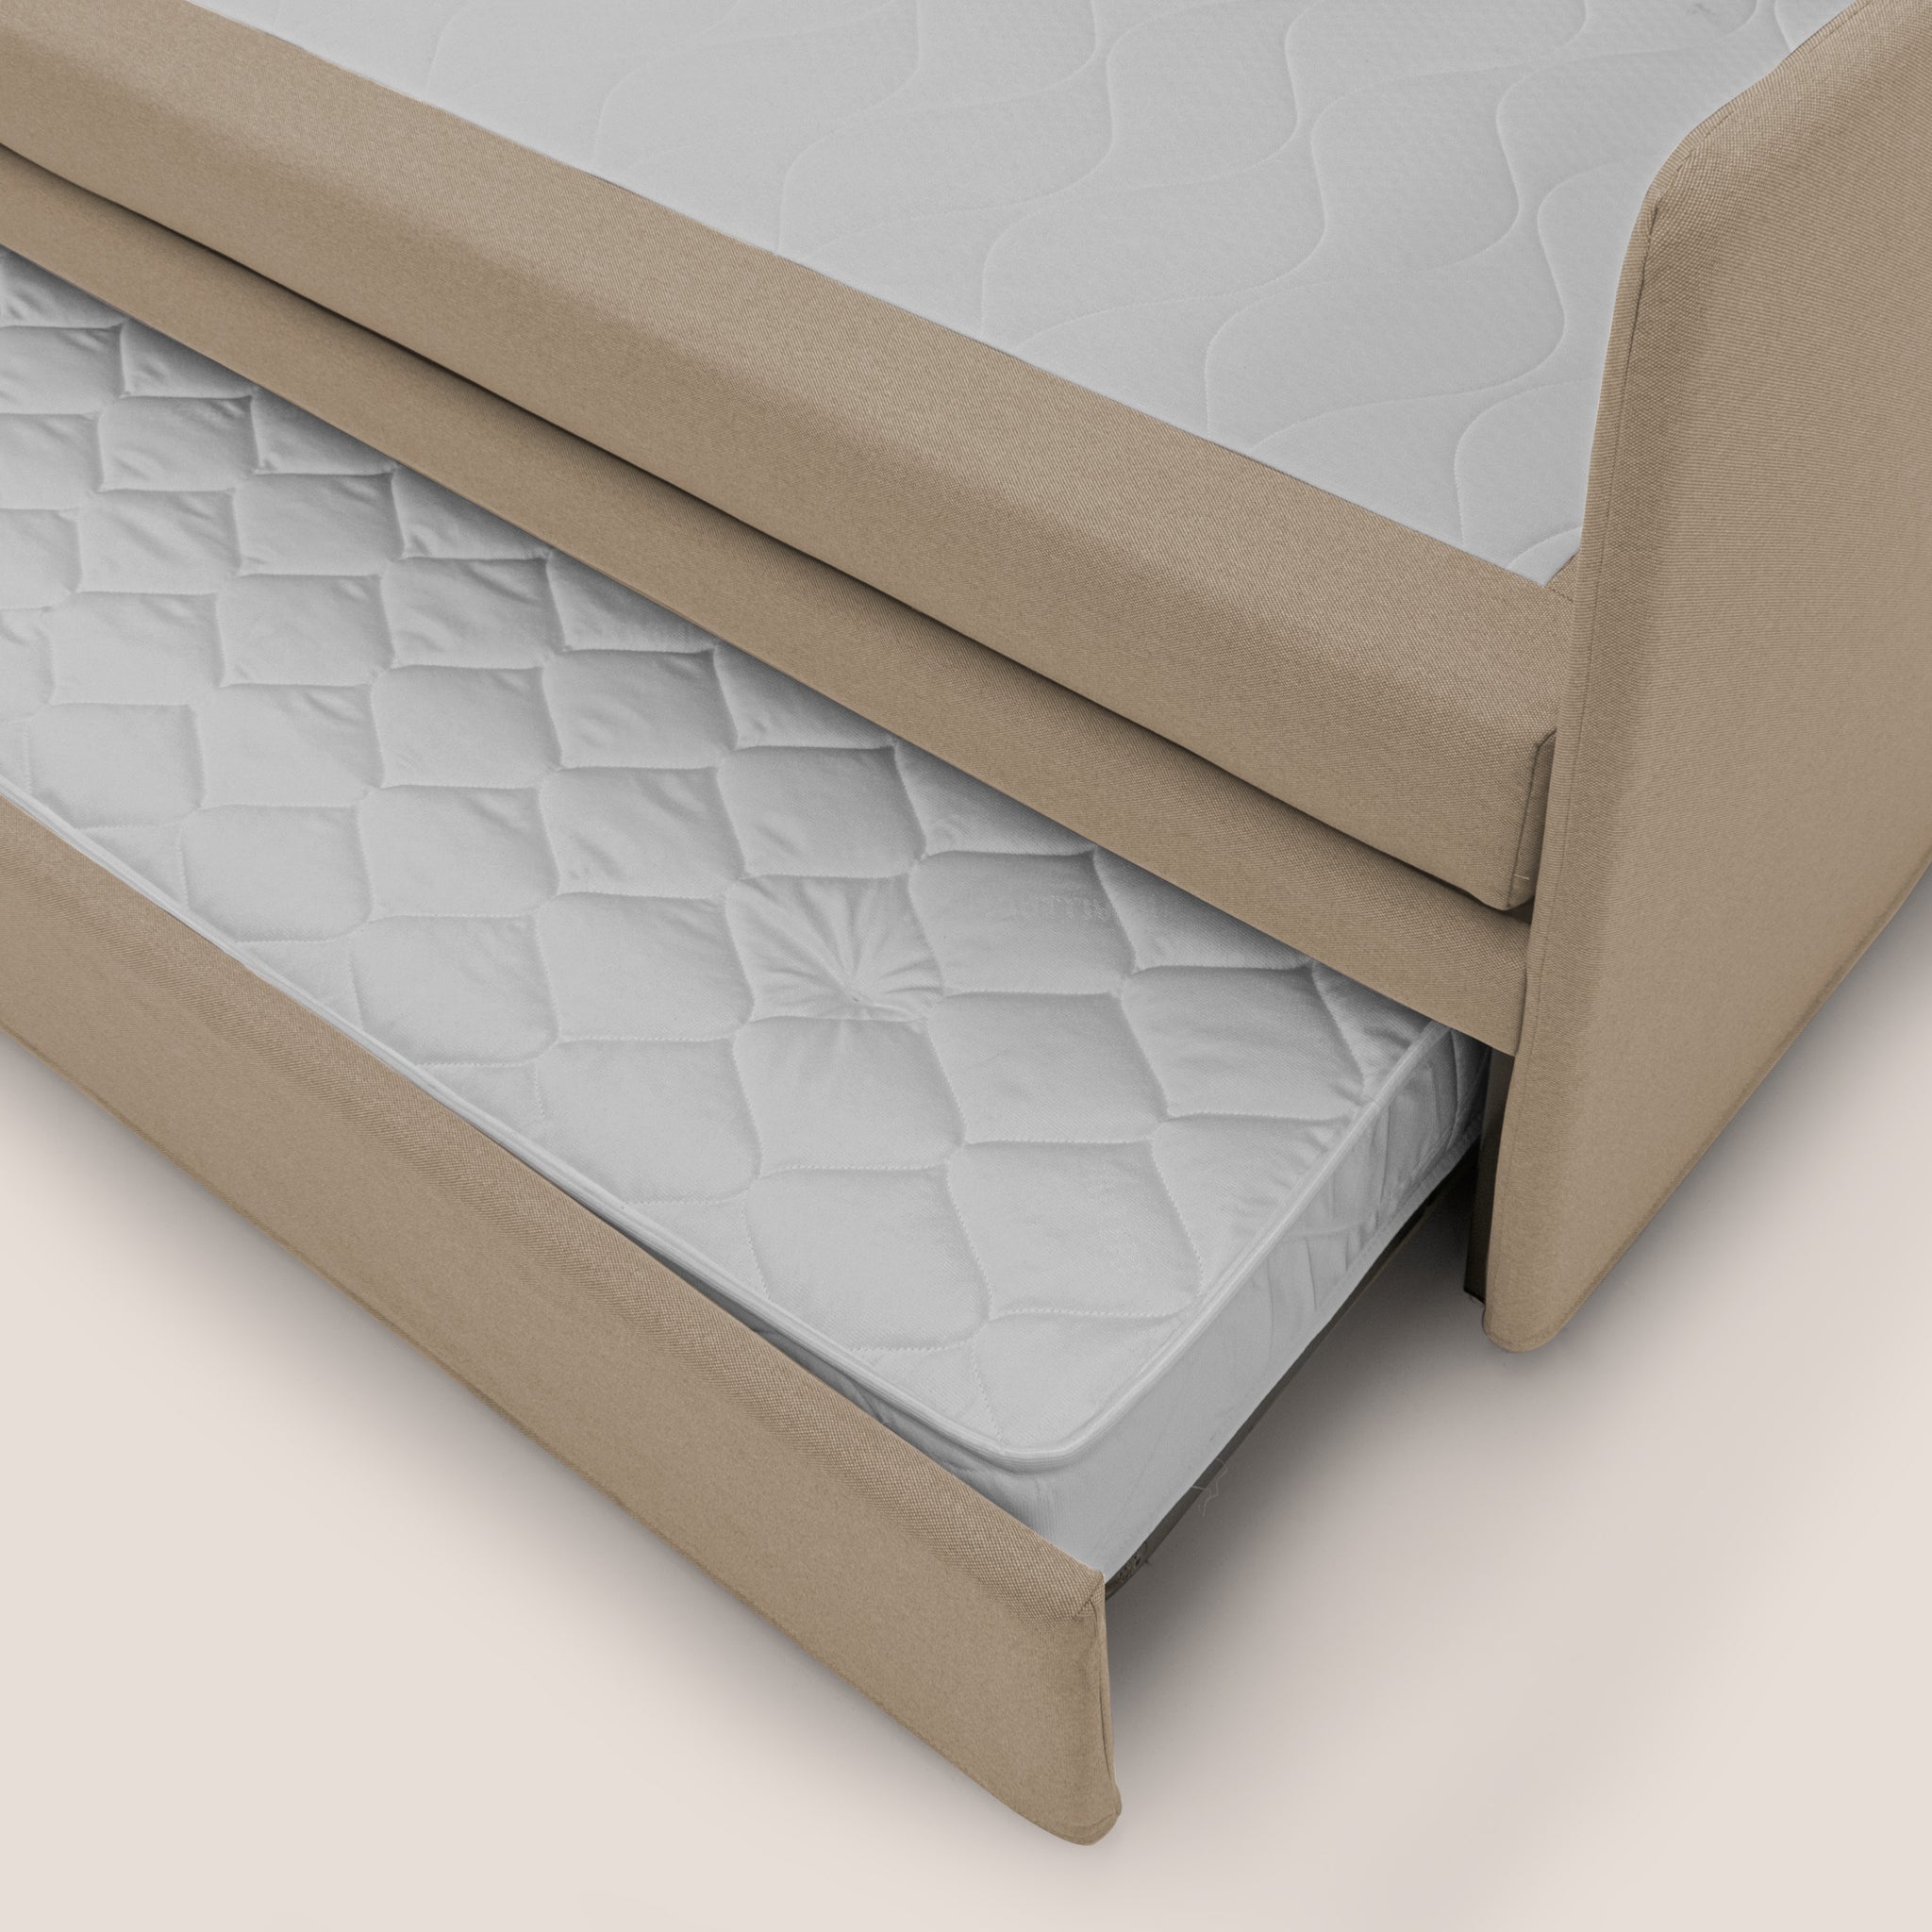 Brenta Divano duplex con doppio letto in tessuto simil cotone impermeabile T13